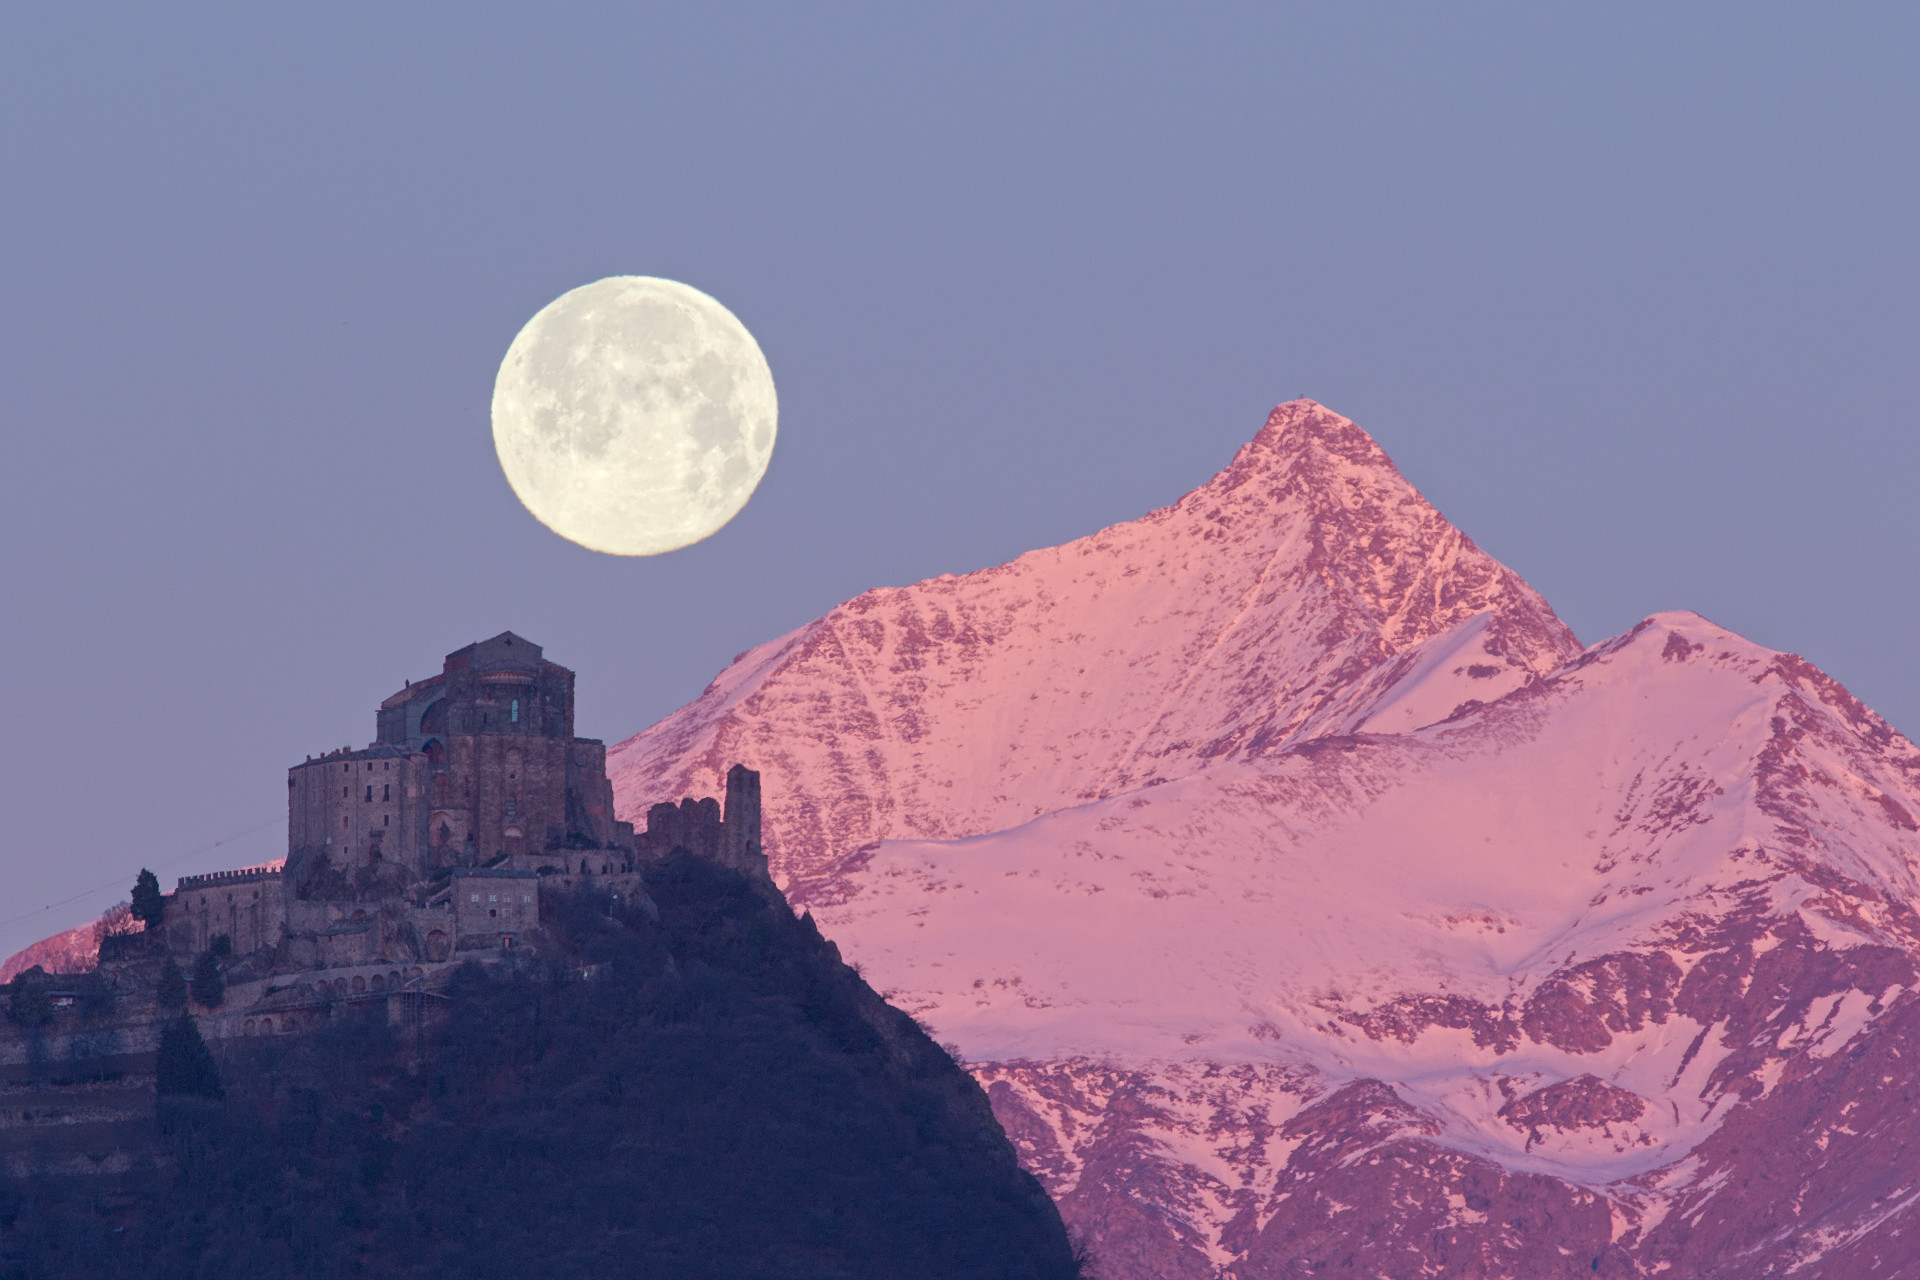 Full moon, Sacra di San MIchele and Rocciamelone...